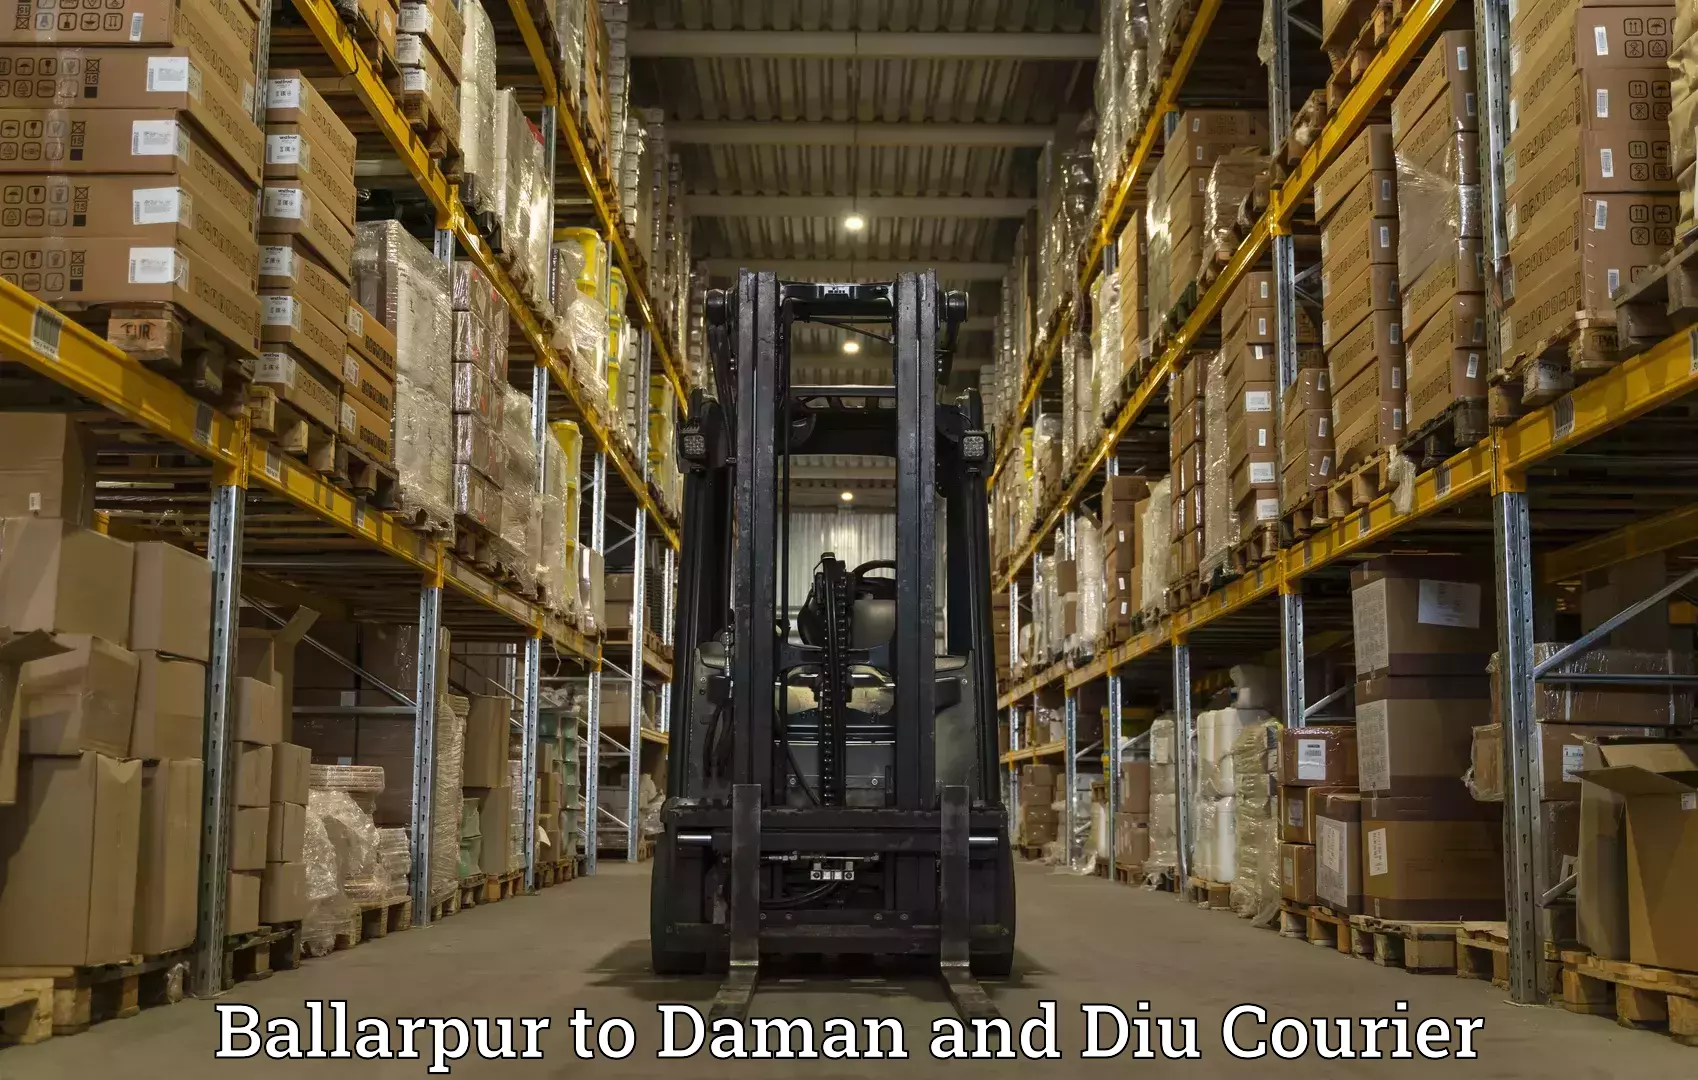 Express logistics service Ballarpur to Daman and Diu